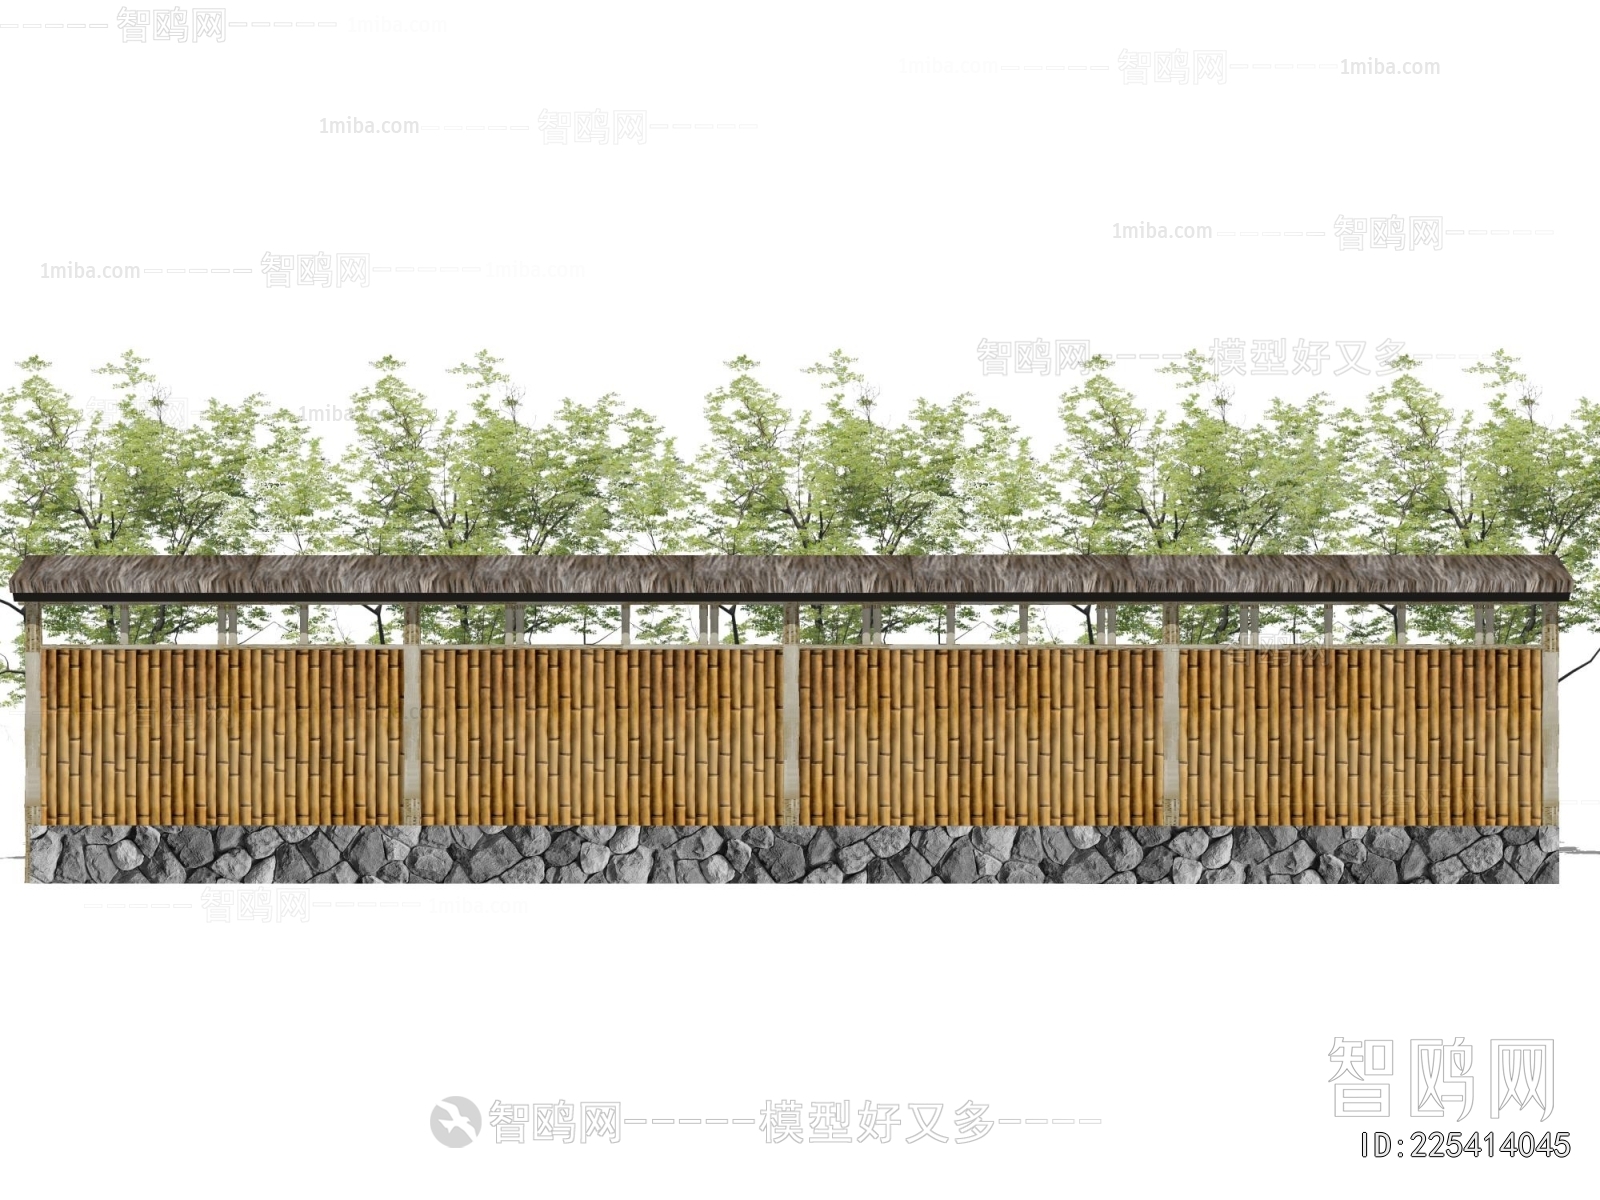 Japanese Style Fence